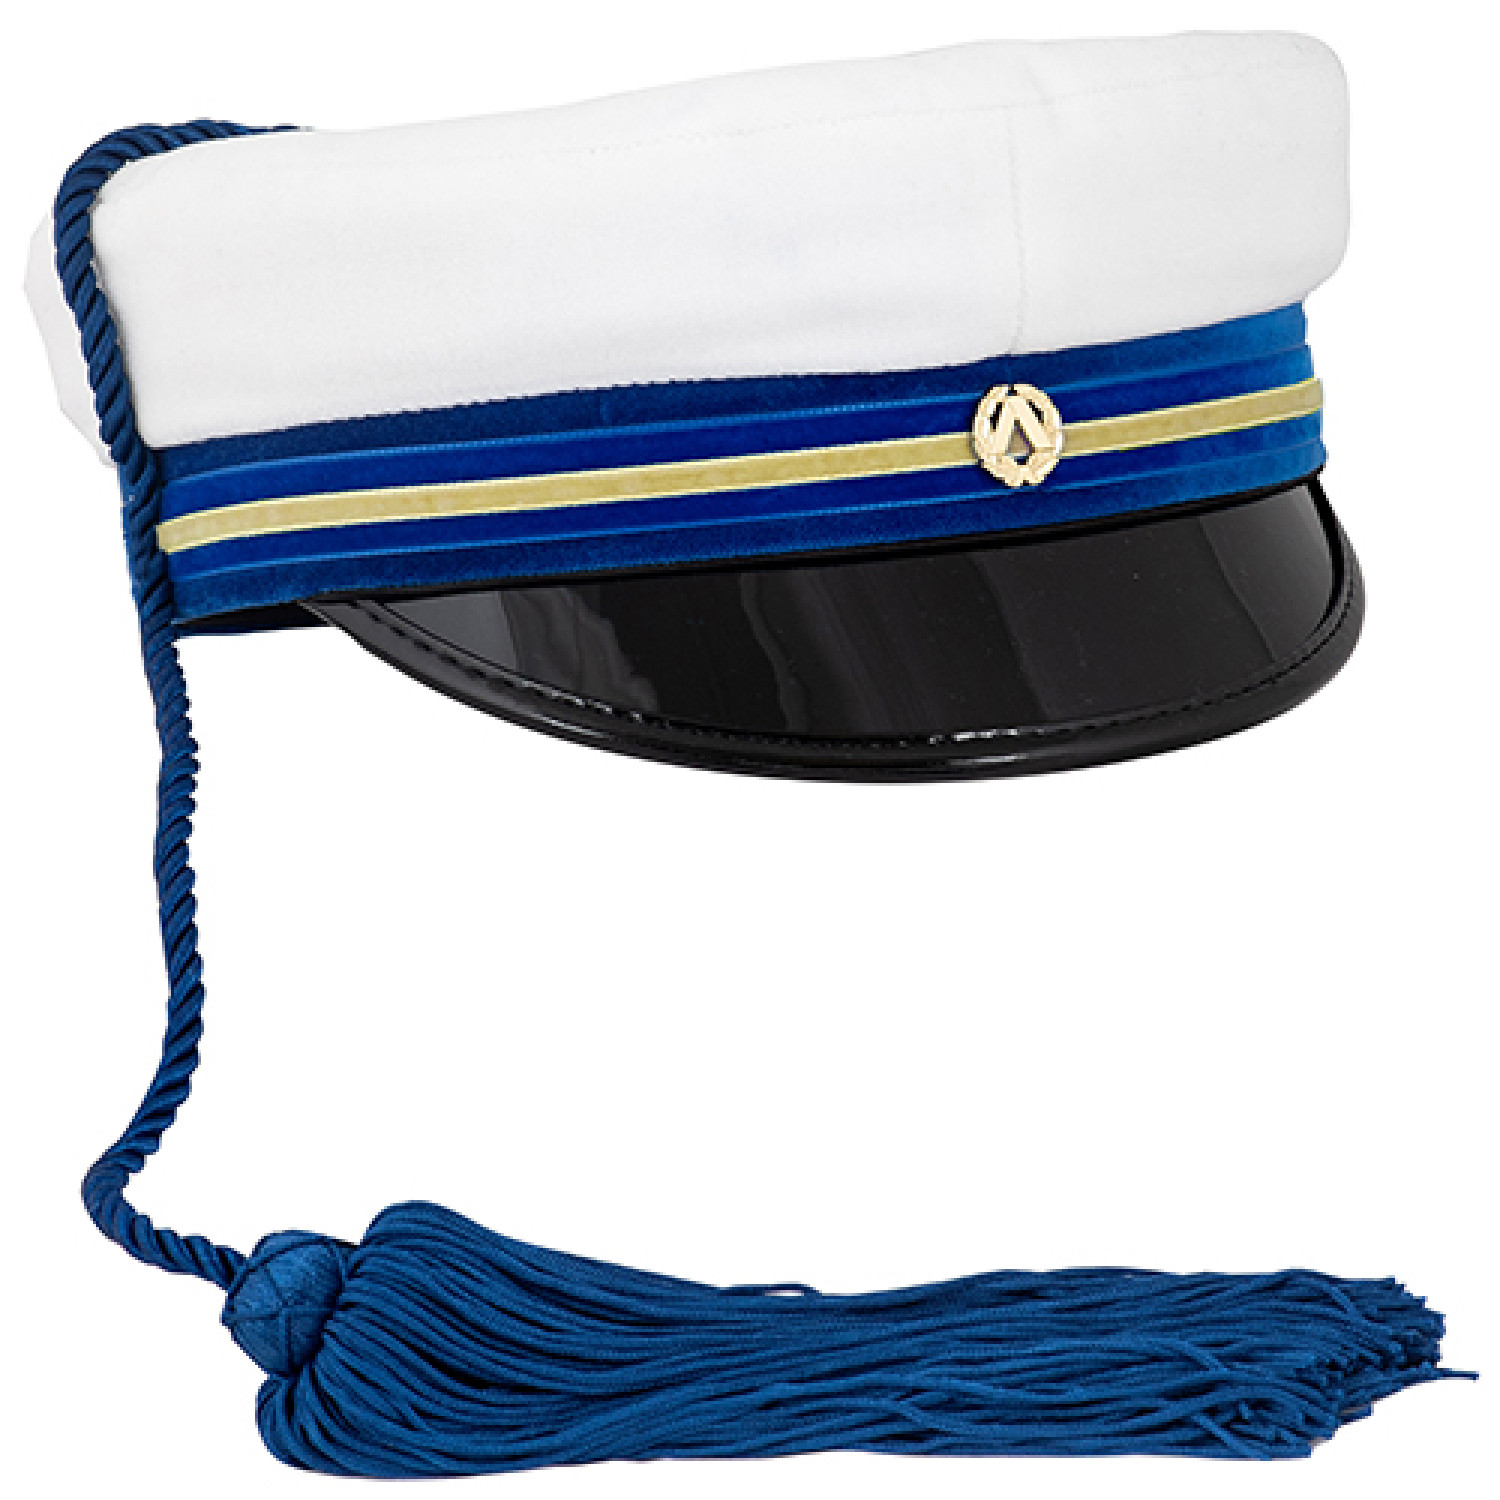 Cargo Handler's Cap